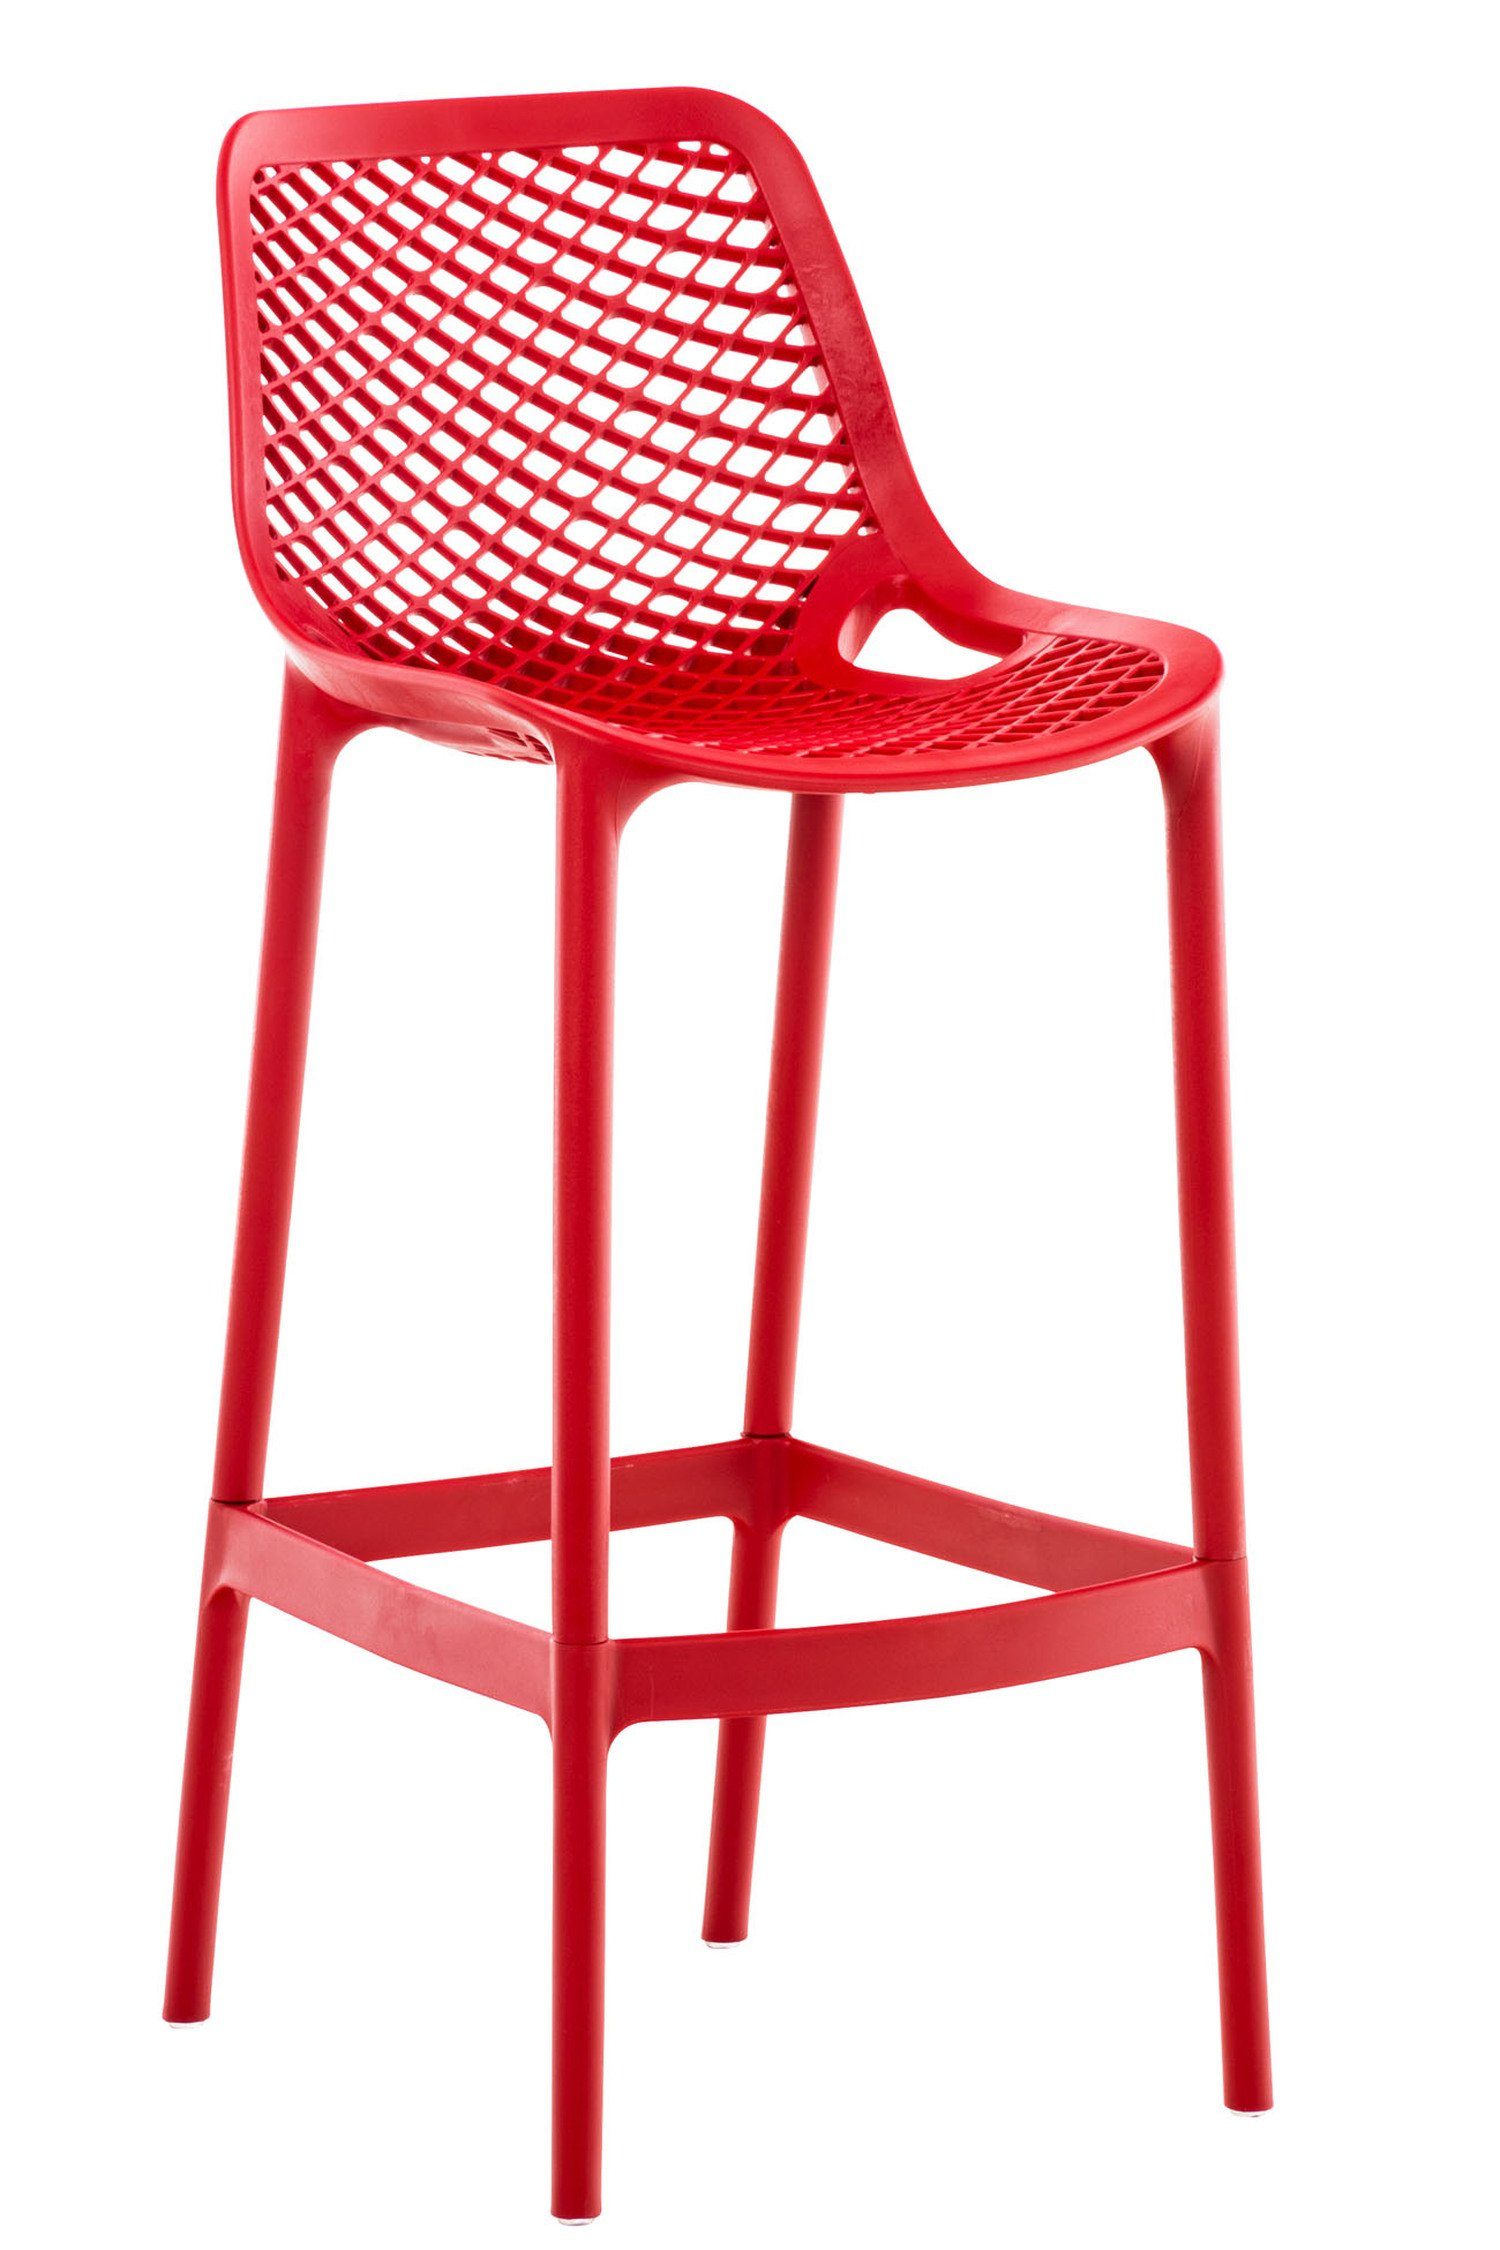 TPFLiving Barhocker Air (mit angenehmer Fußstütze - Hocker für Theke & Küche), Gestell Kunststoff - Sitzfläche: Kunststoff Rot